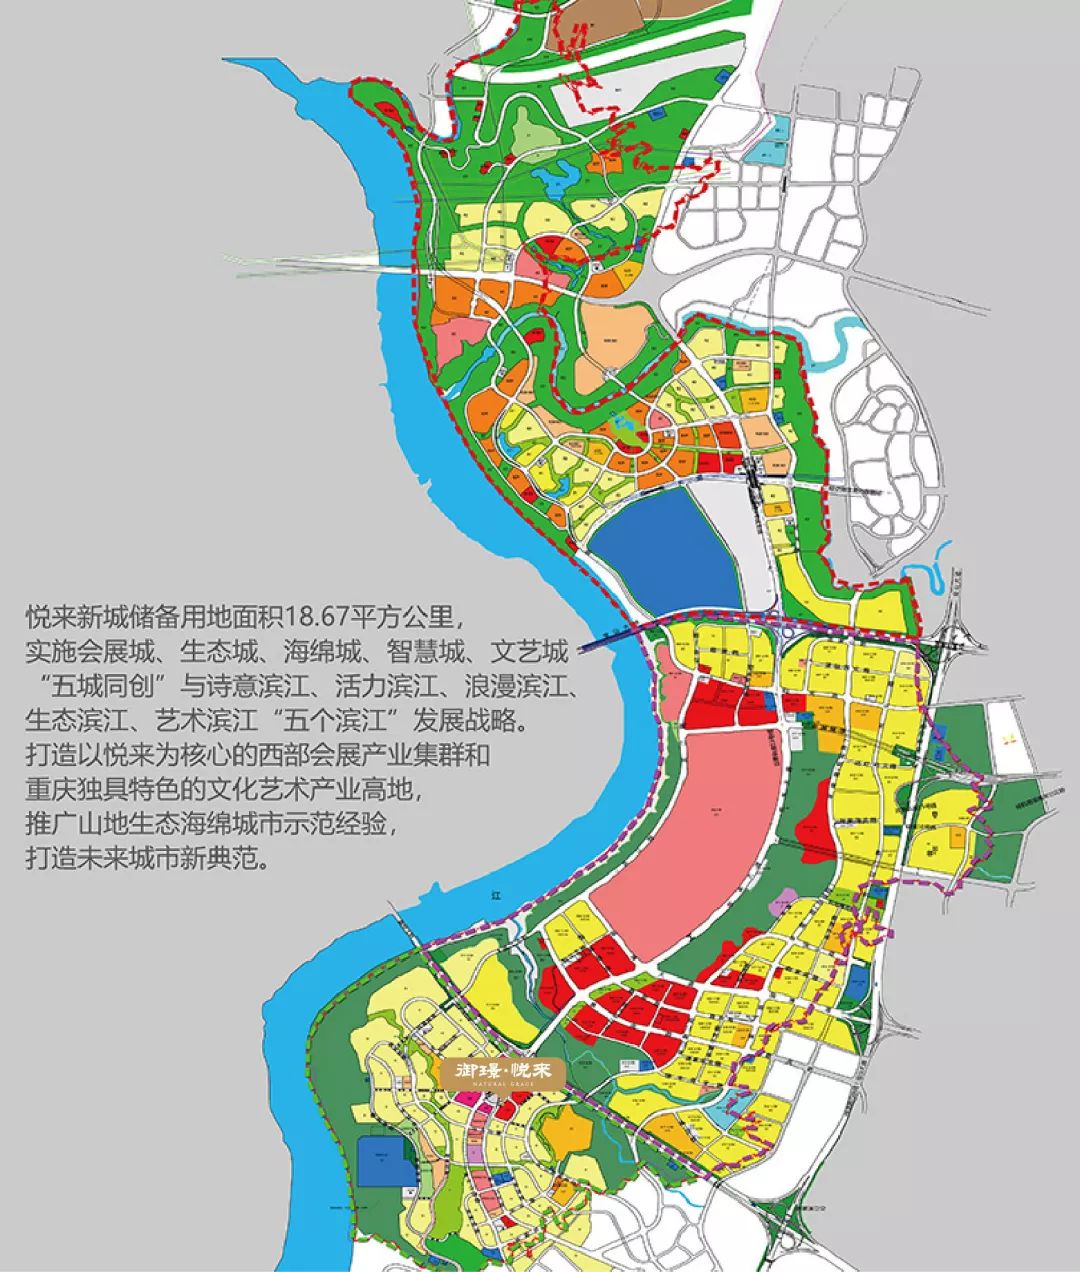 悦来作为重庆唯一全域tod规划区,合智慧城,会展城,生态